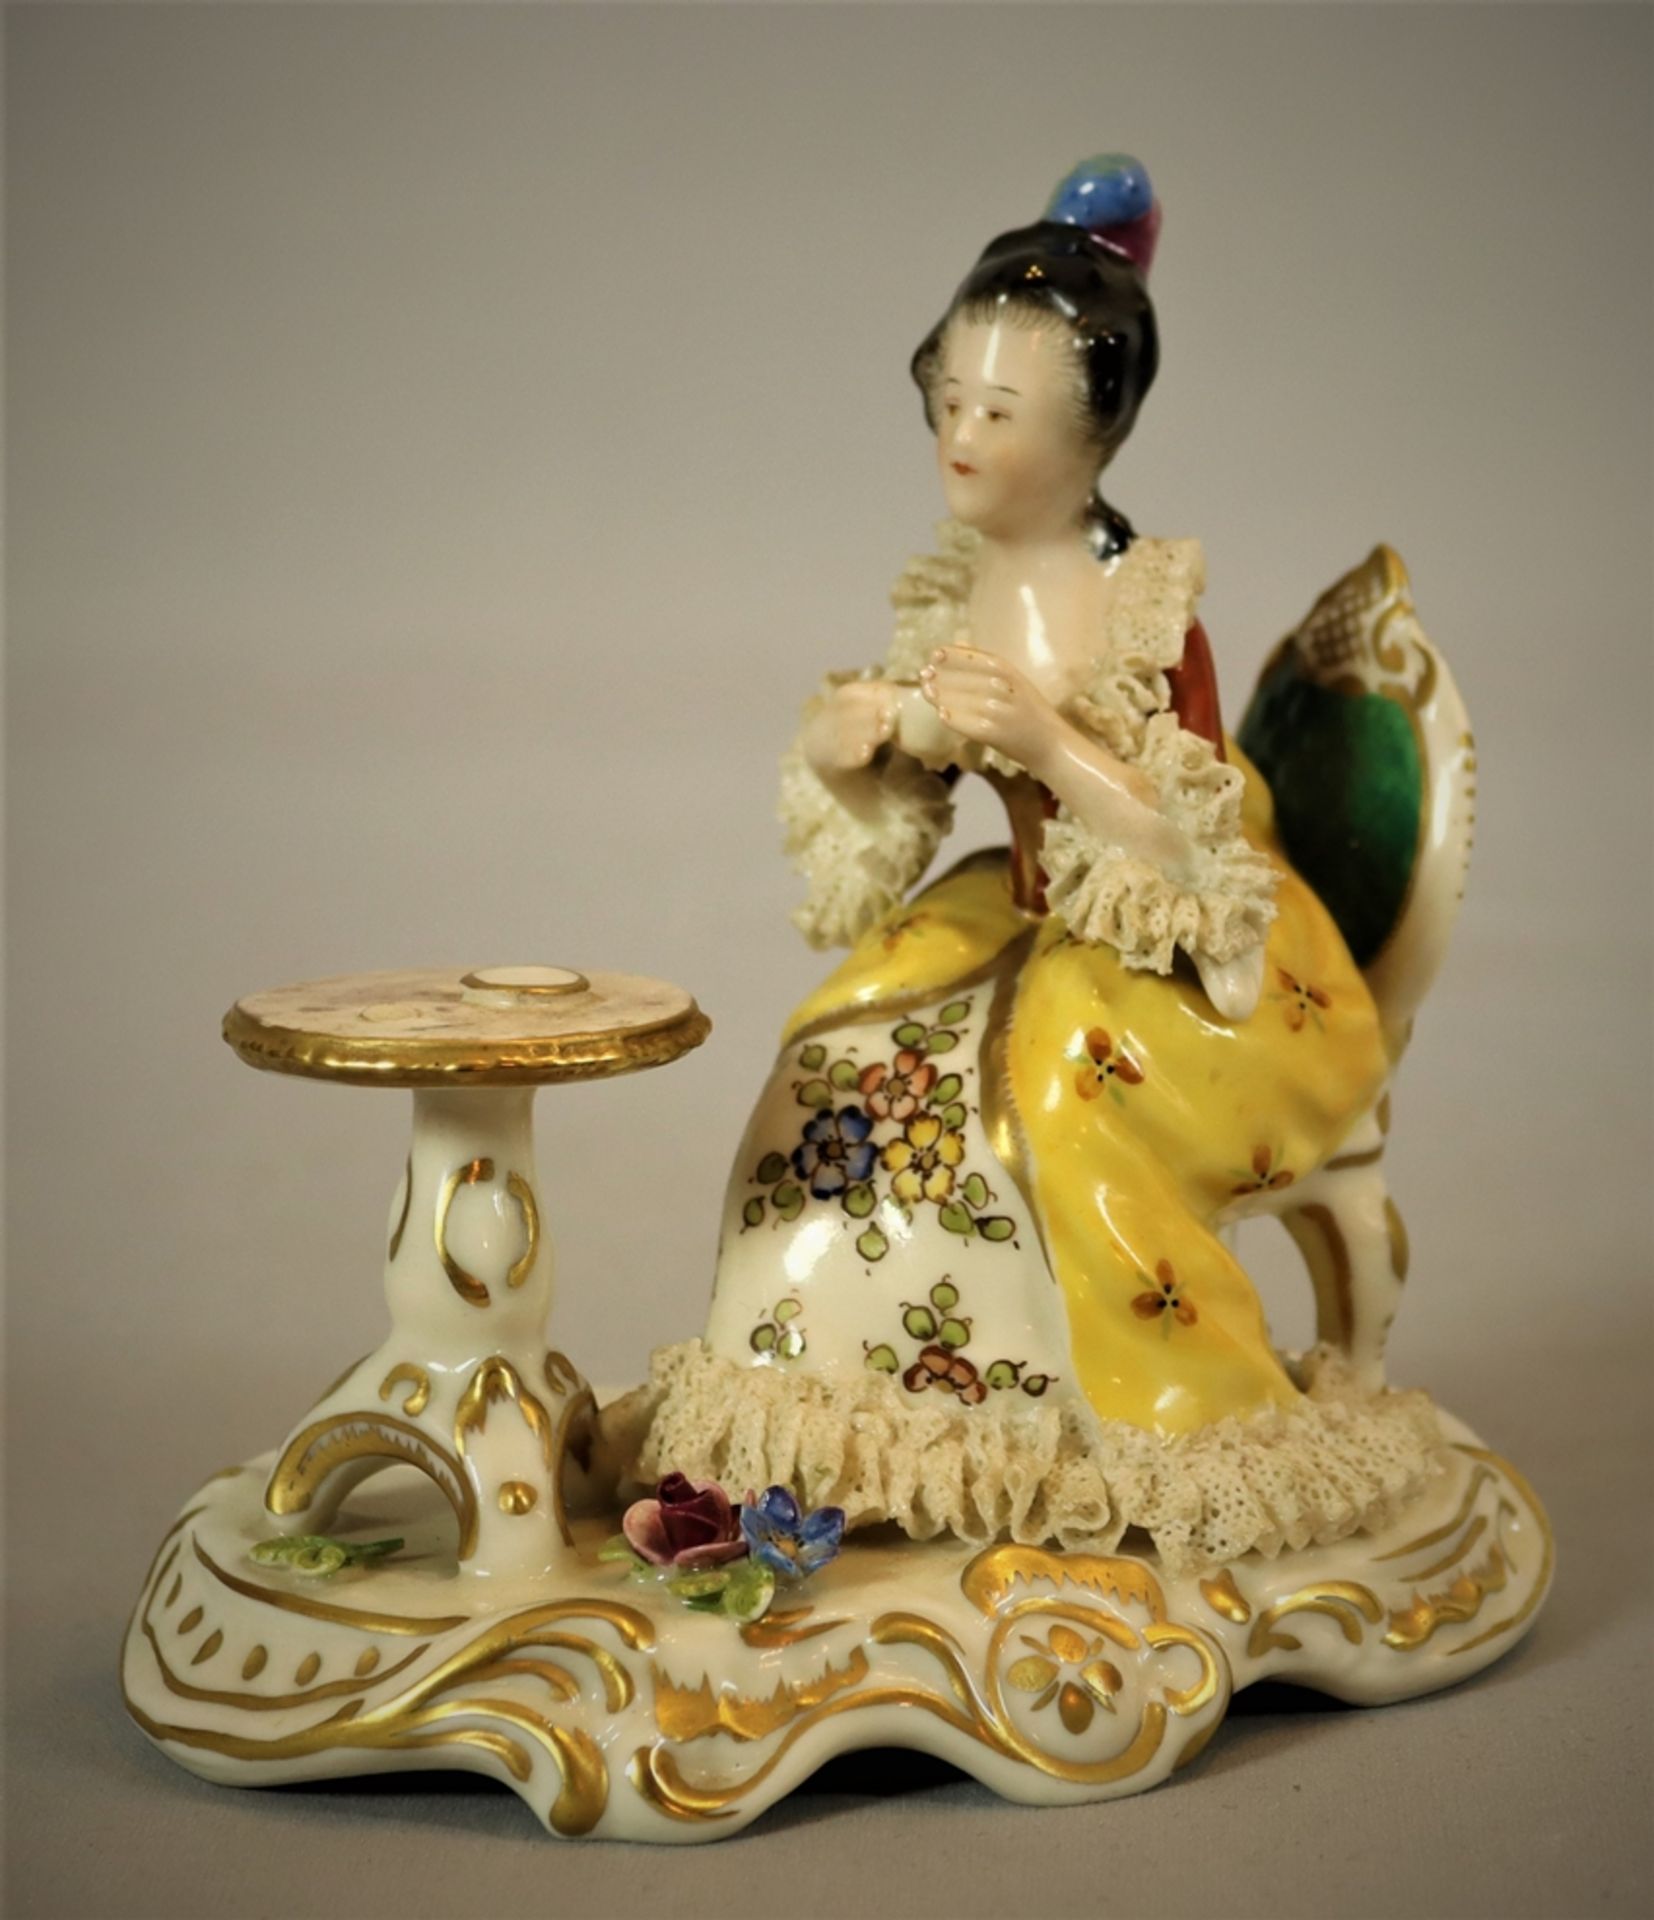 Porcelain figure, Historicism before 1900, German